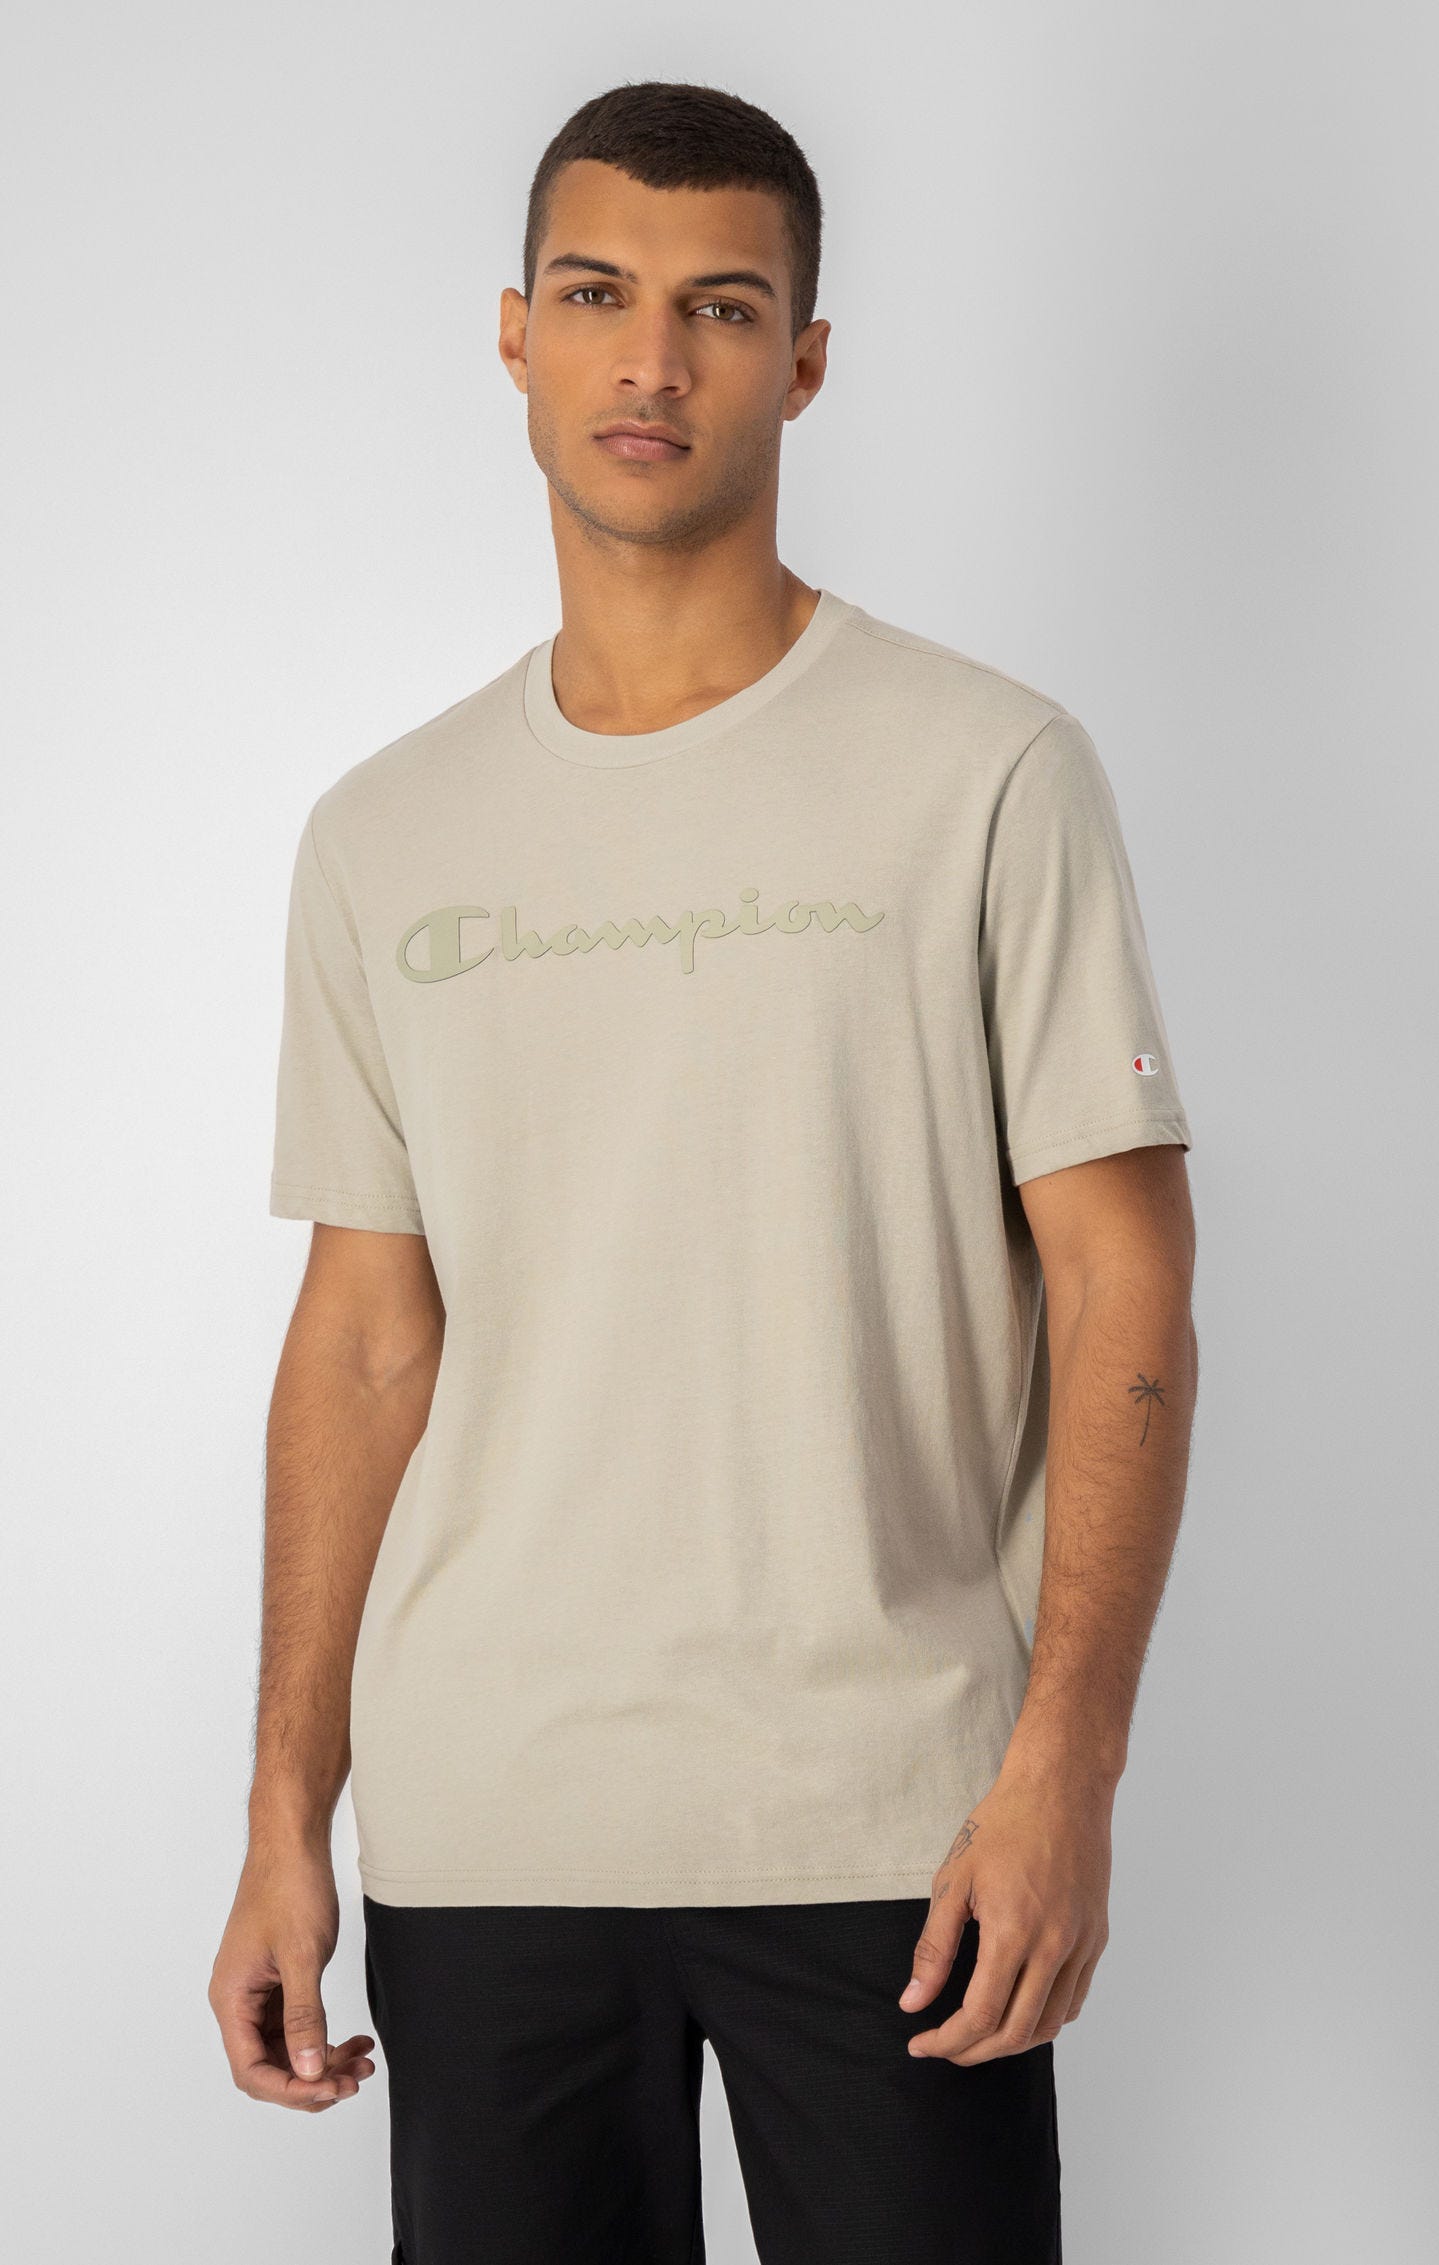 T-shirt à logo Champion imprimé